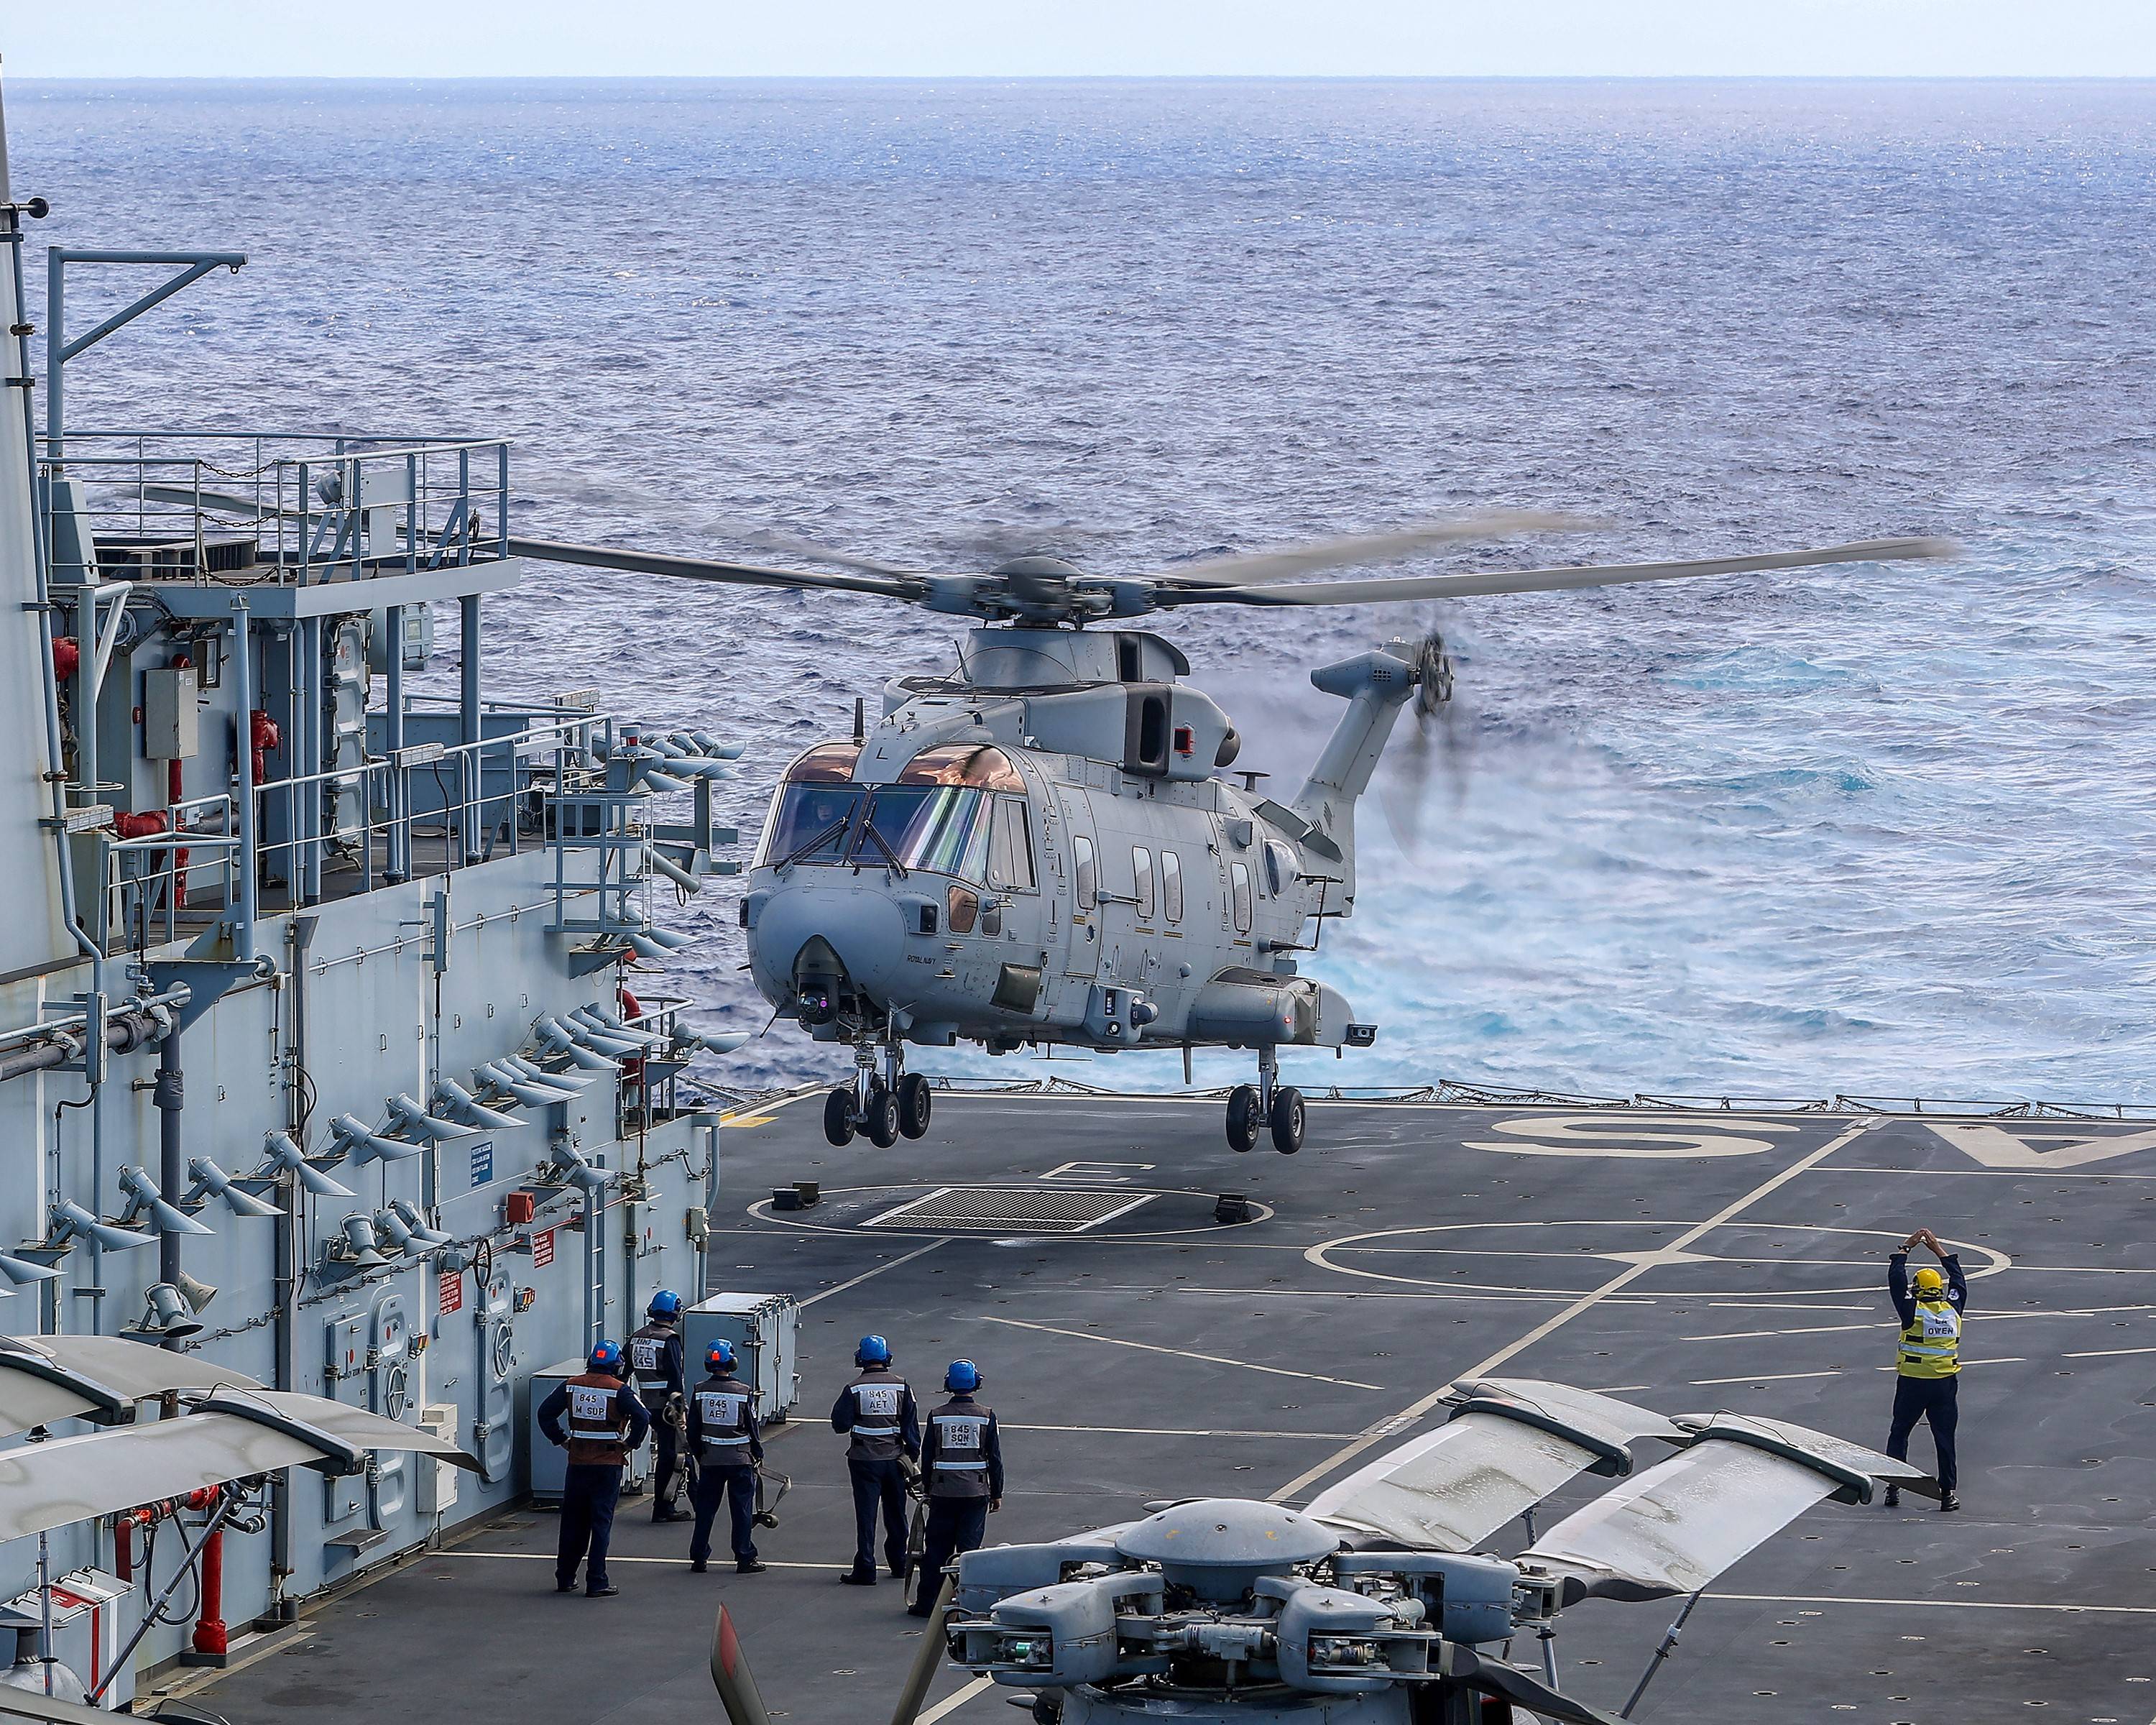 原创英国百眼巨人号直升机母舰,28000吨可带6架直升机,如今却要卖掉